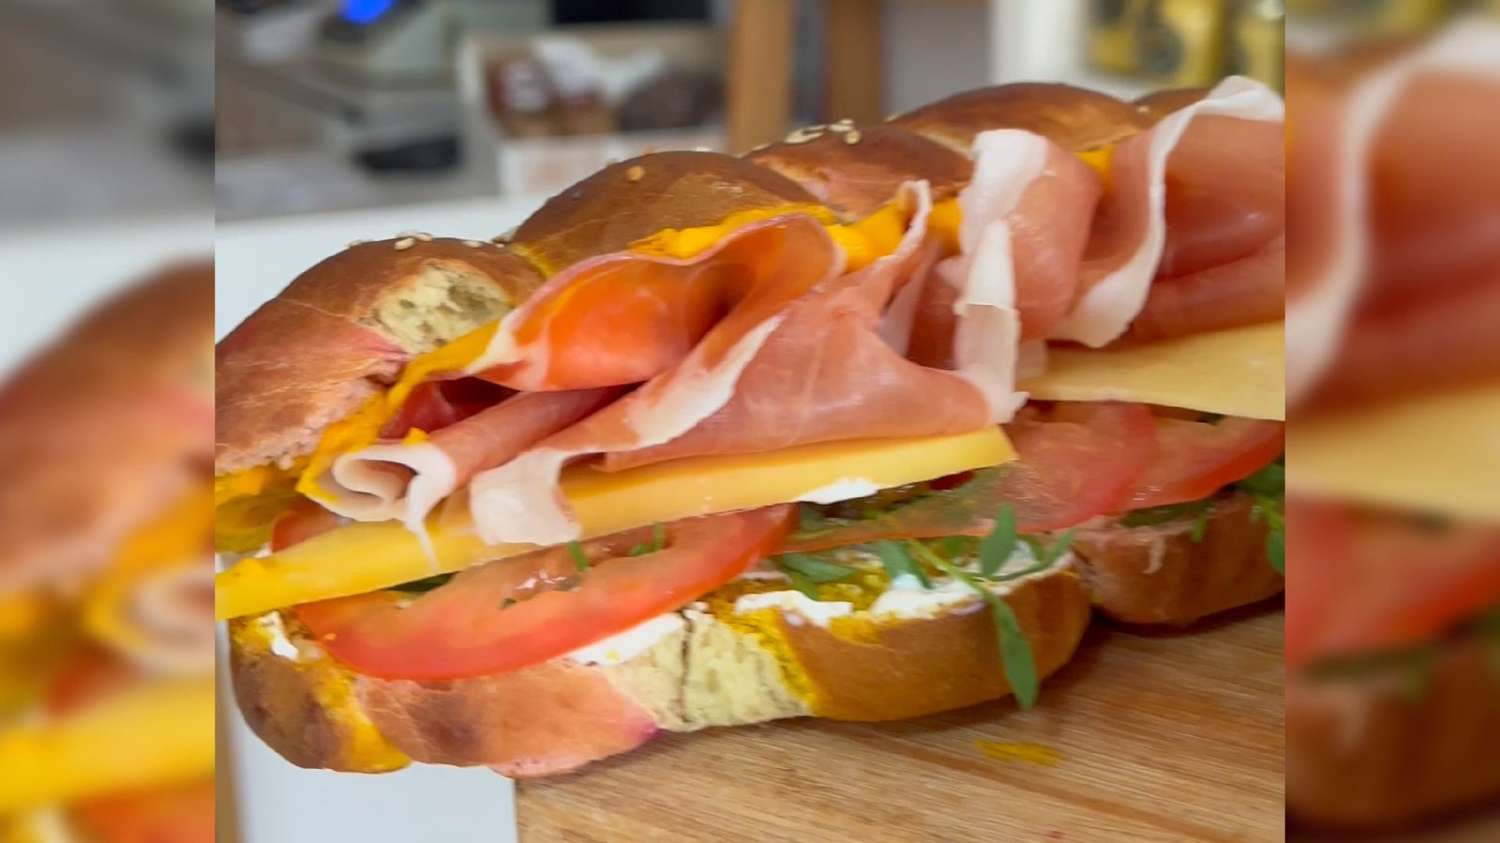 Sorprendé con un sandwich imperdible con el toque justo de vegetales y hongos